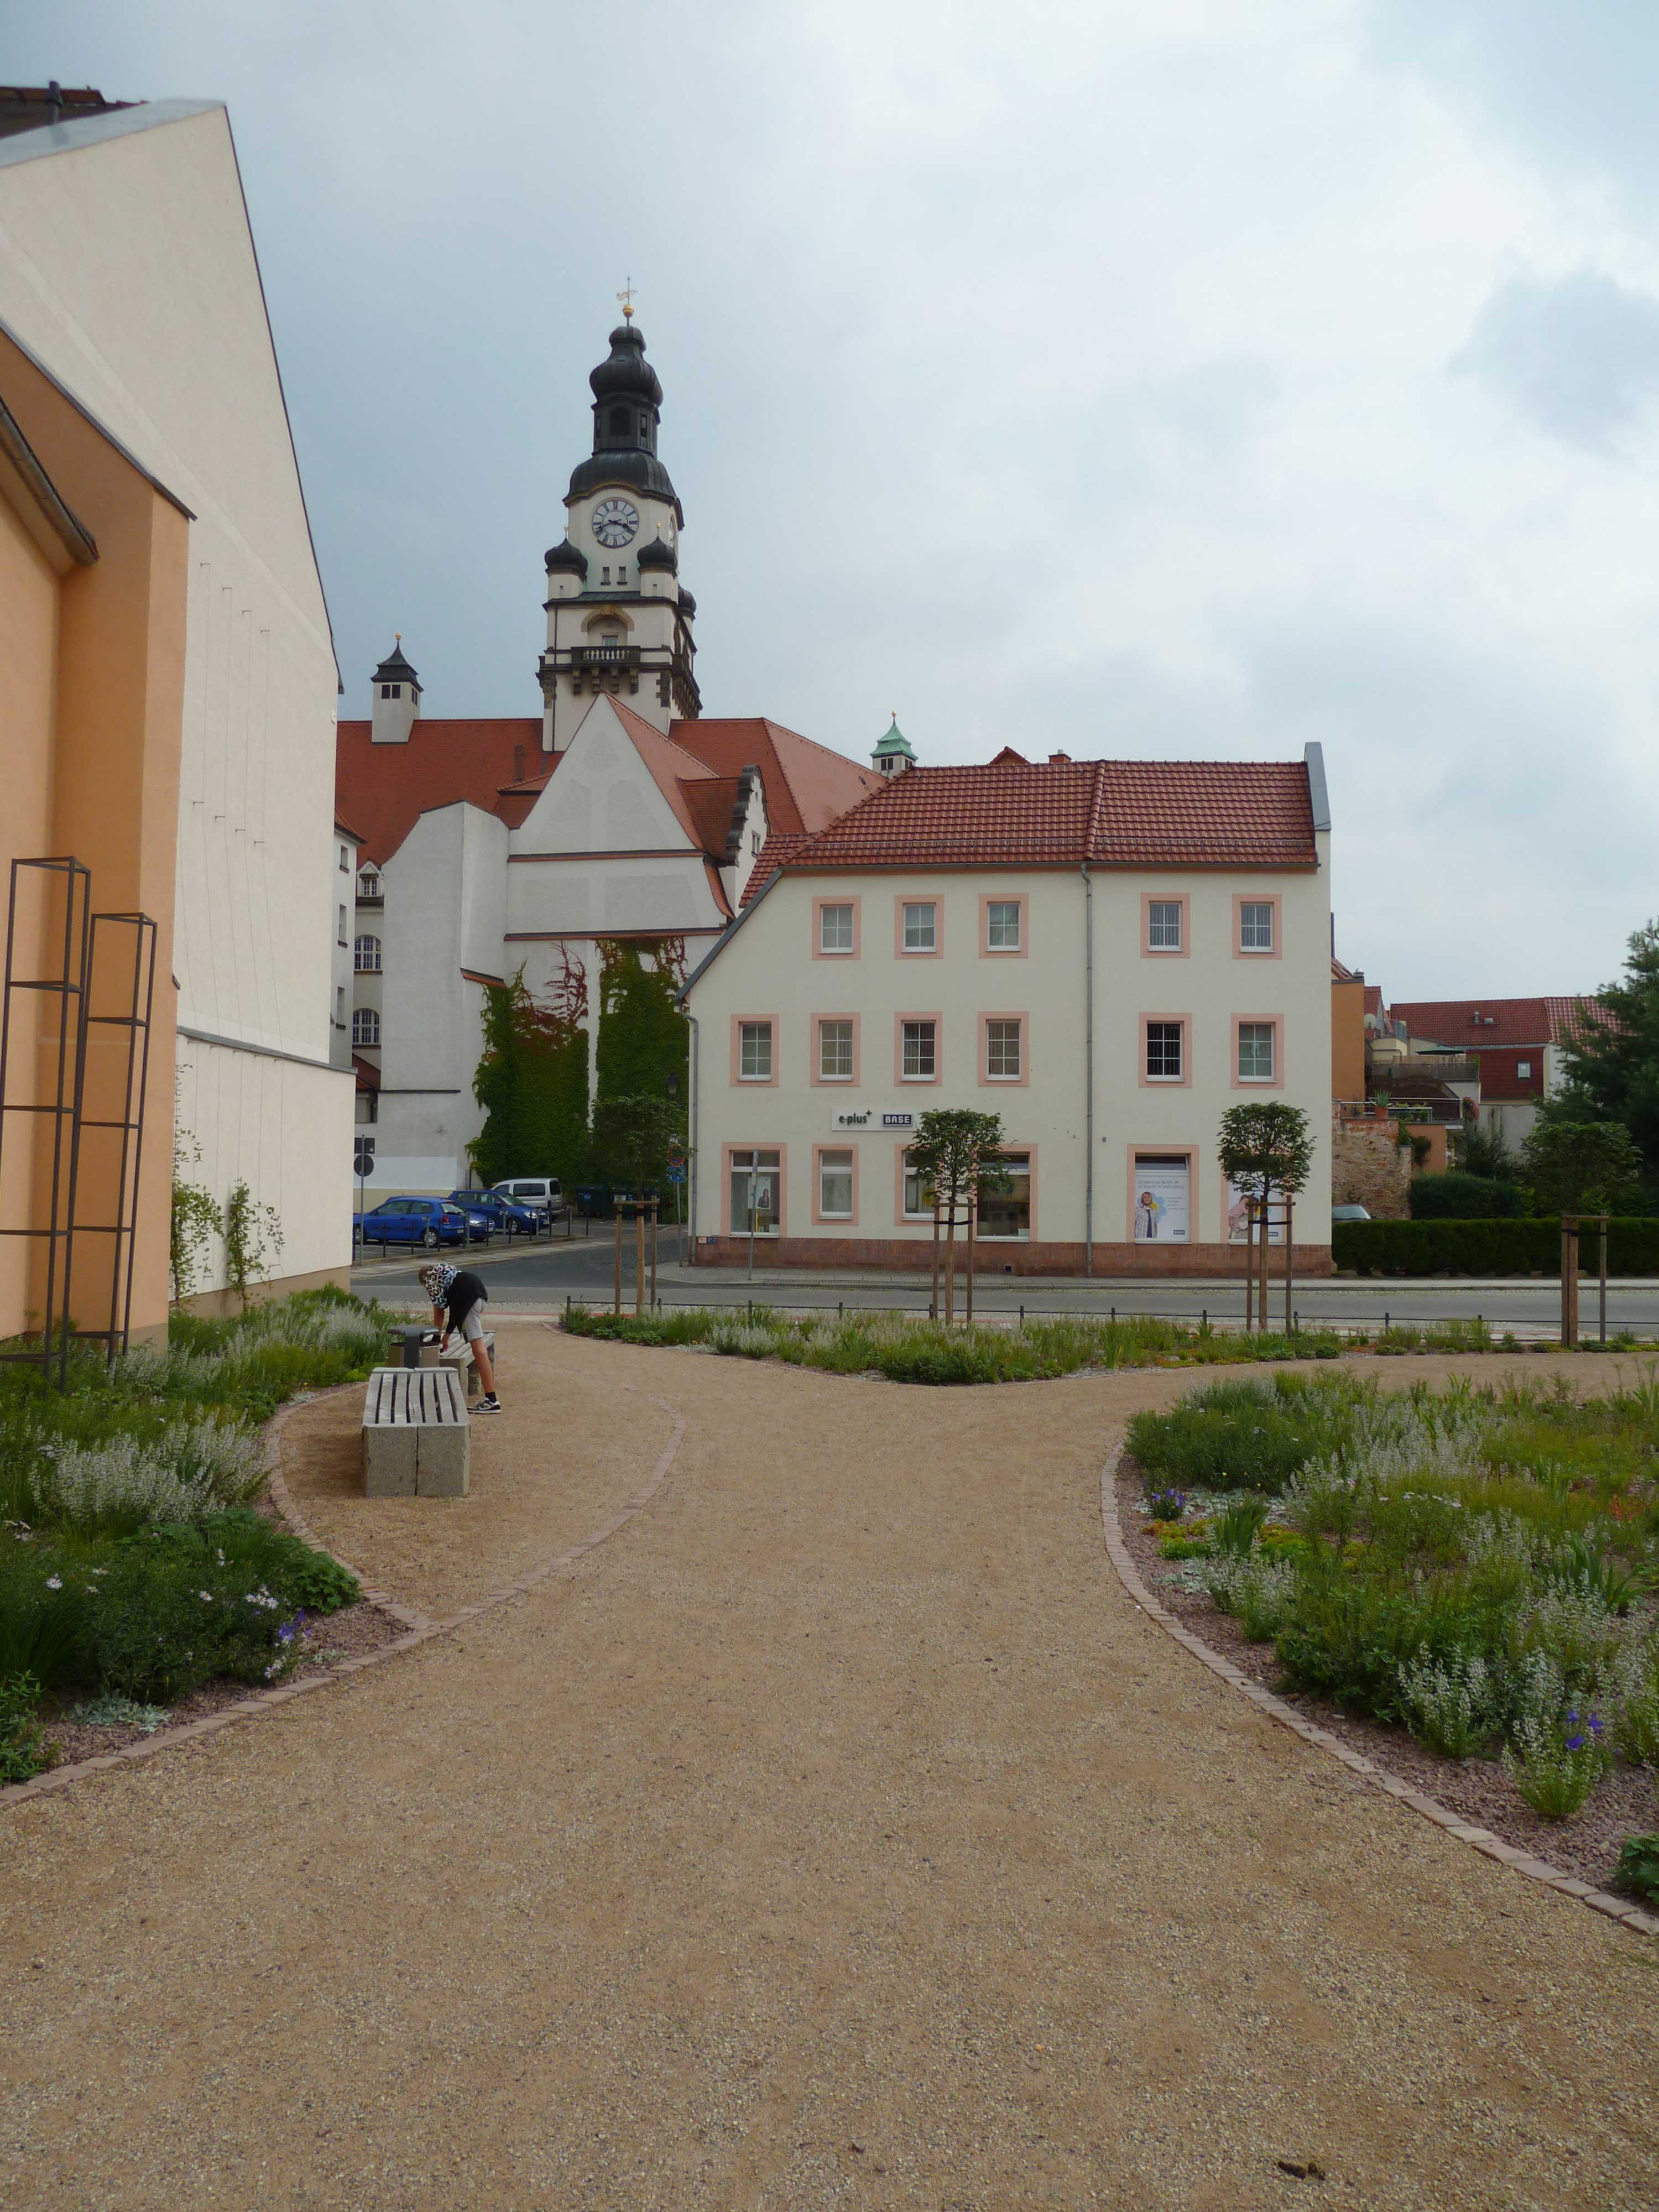 Sichtachse in Richtung Rathaus (Foto: Stadt Döbeln)